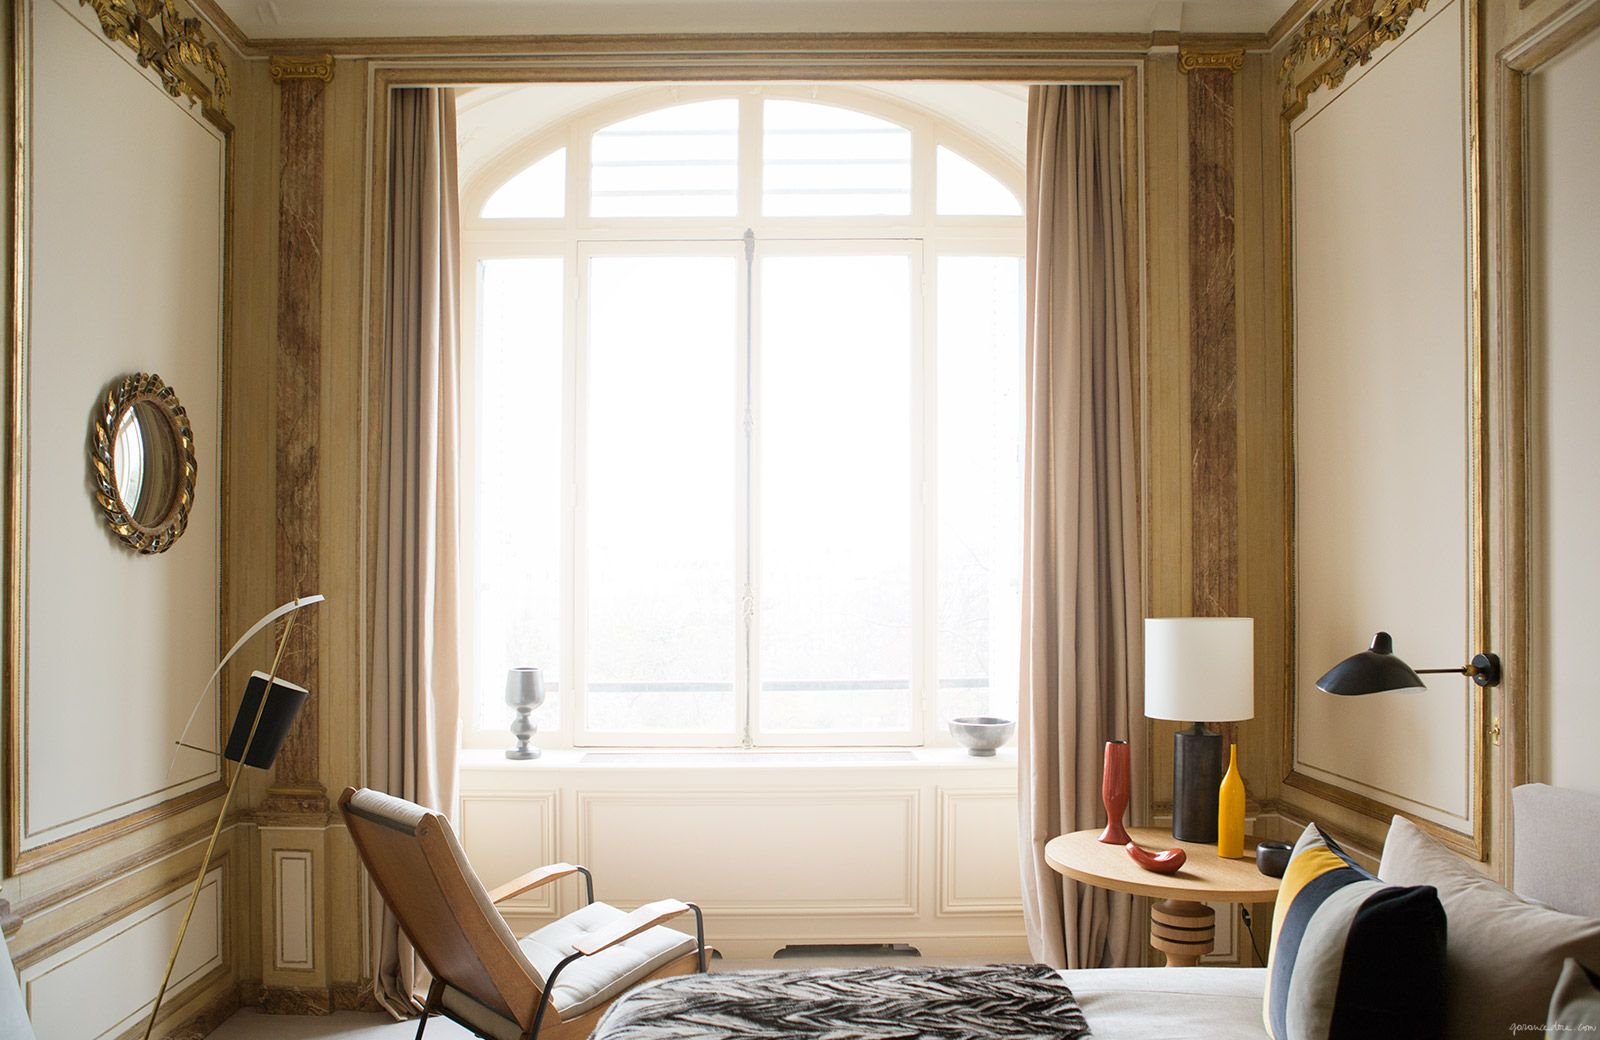 Dormitorio con una ventana grande y molduras en las paredes. Géminis (21 de mayo al 20 de junio)